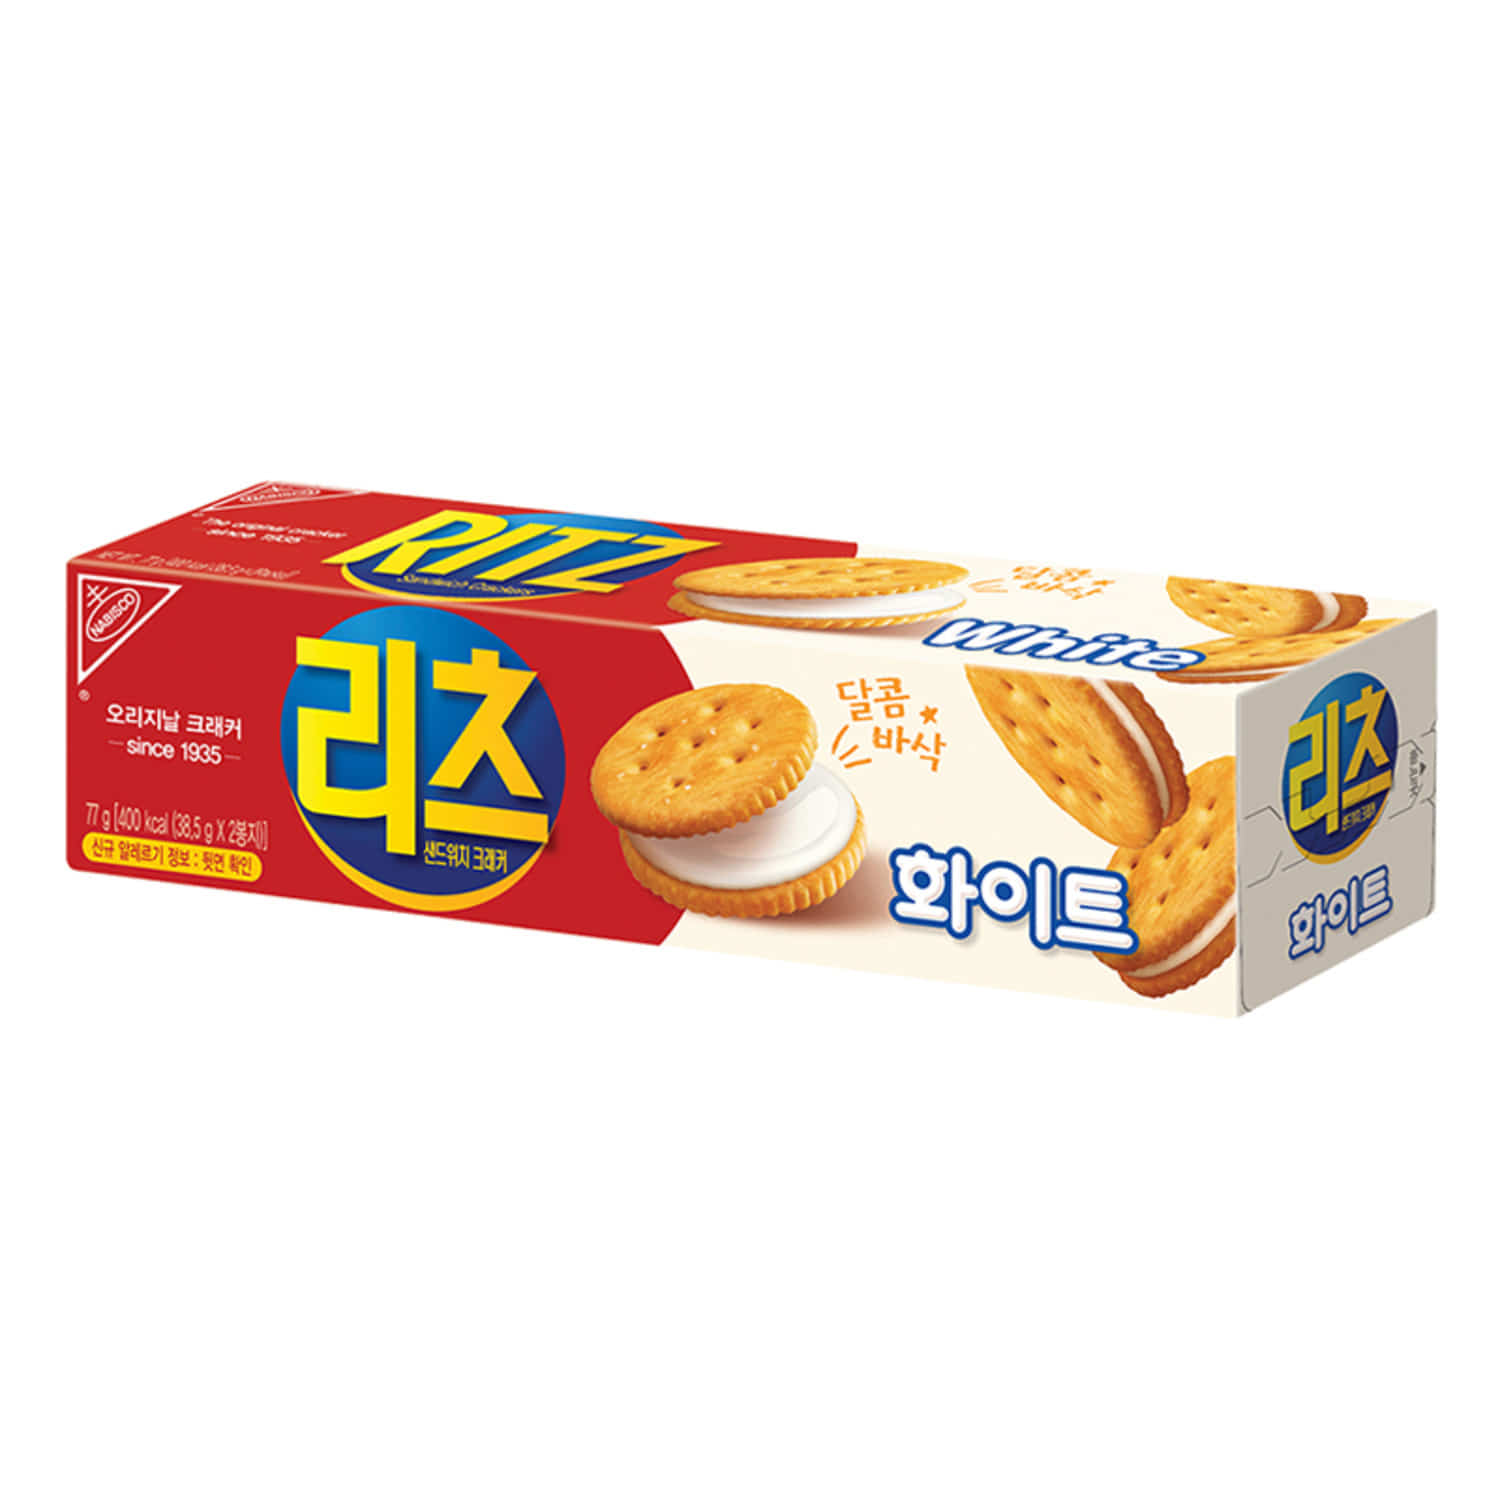 리츠 크래커/치즈/초코/화이트 샌드 모음전